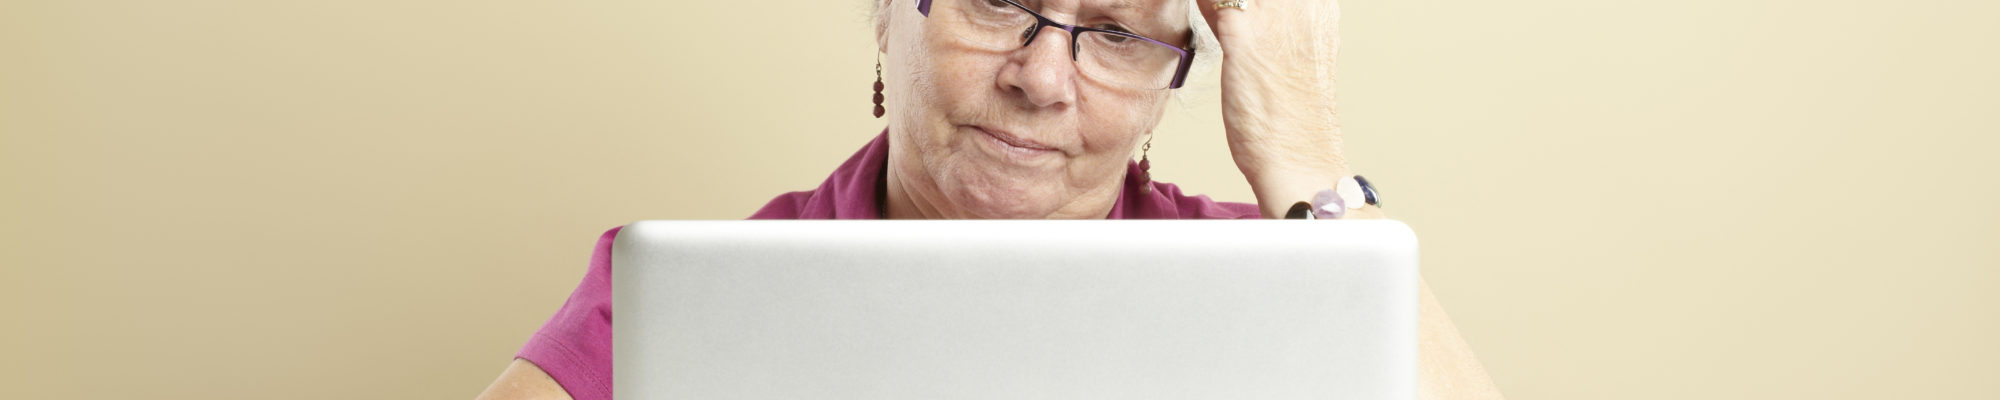 Senior using laptop